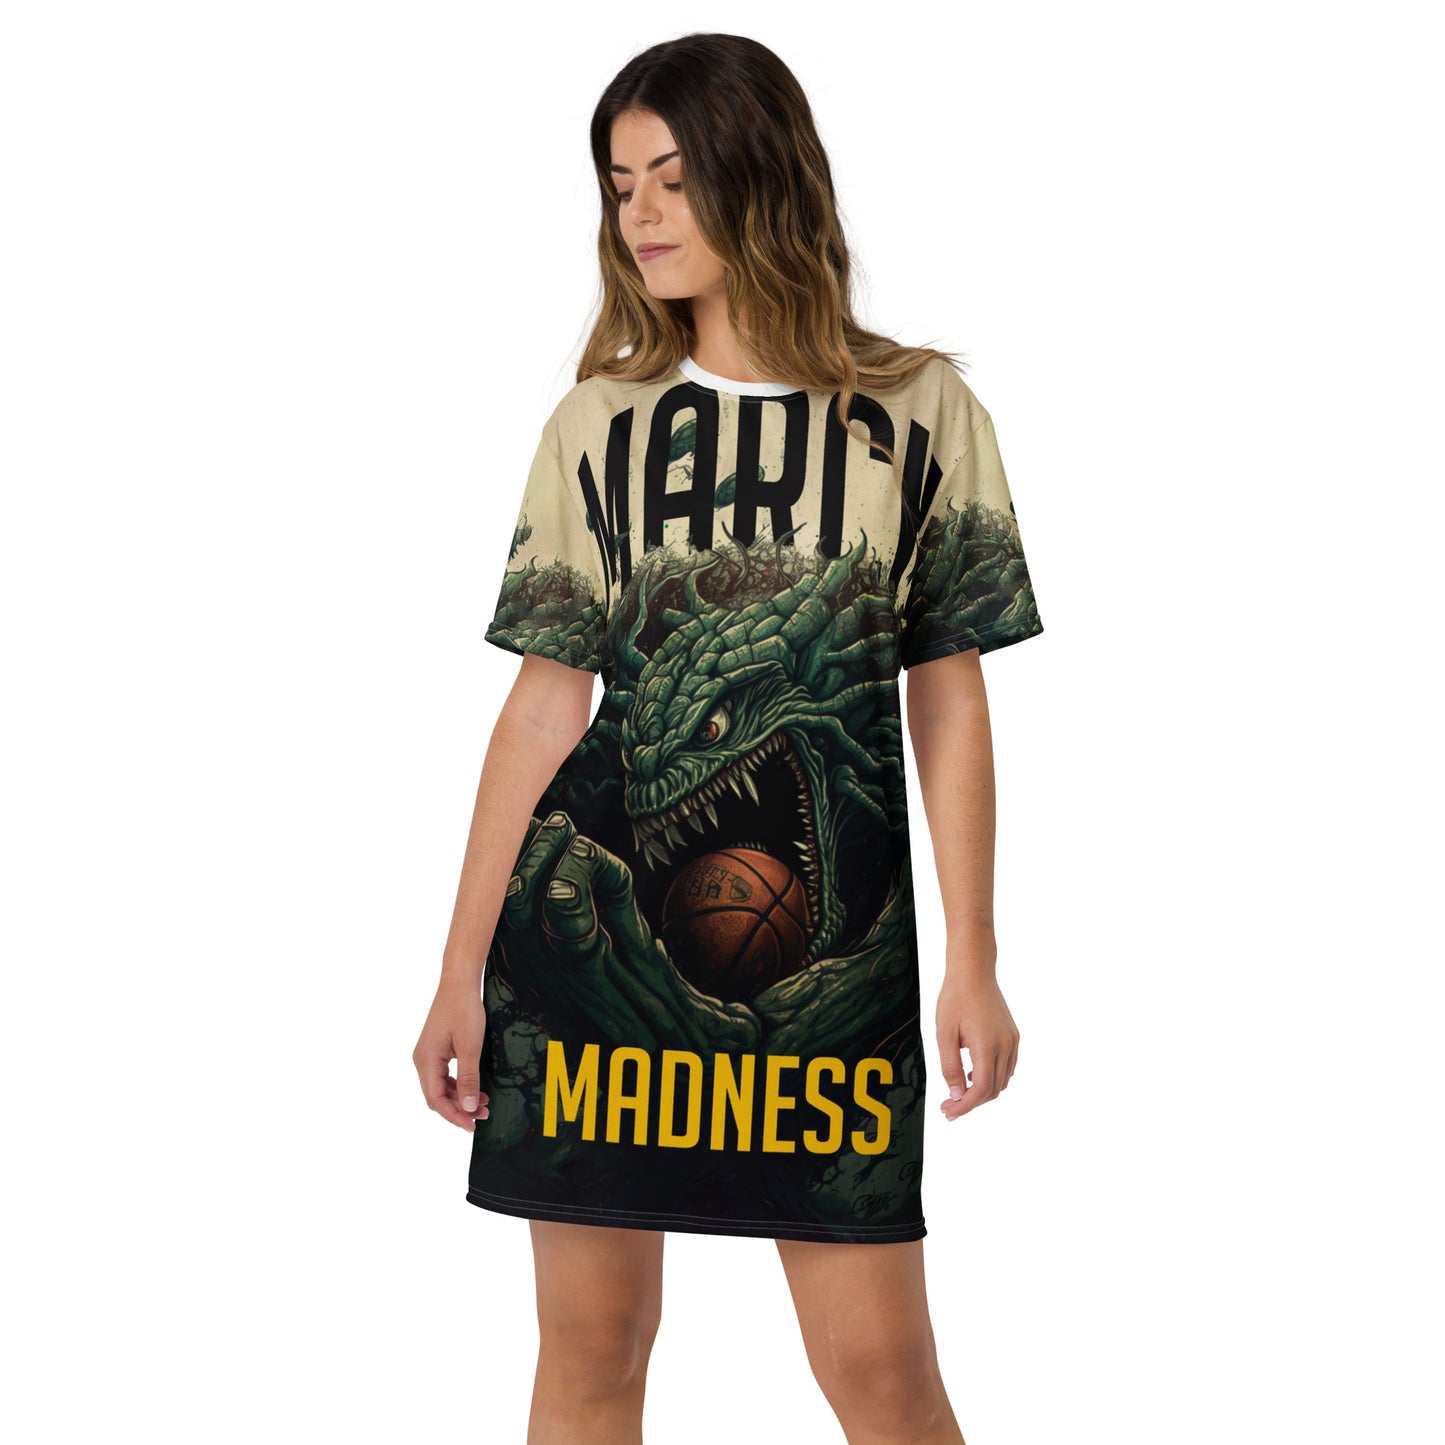 Monster Madness - T-shirt dress